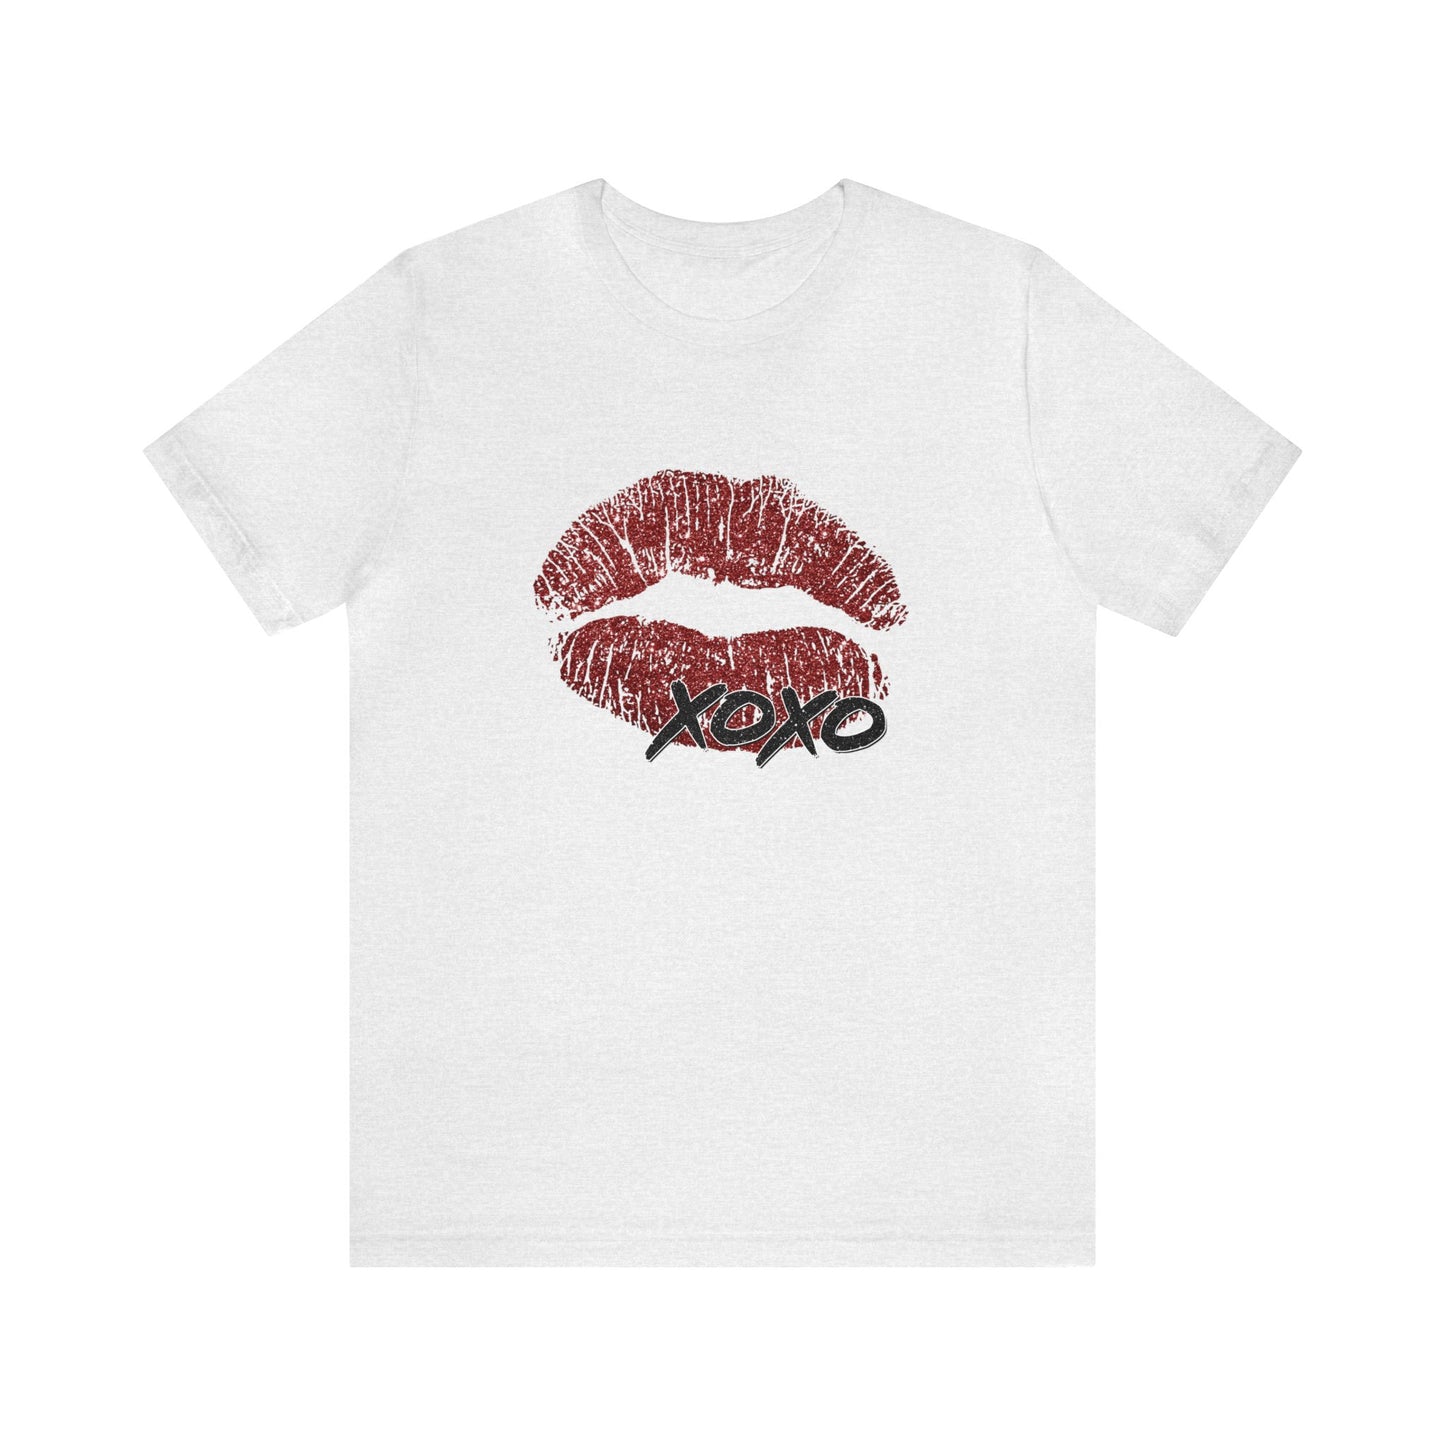 Lips XOXO Women's Tshirt